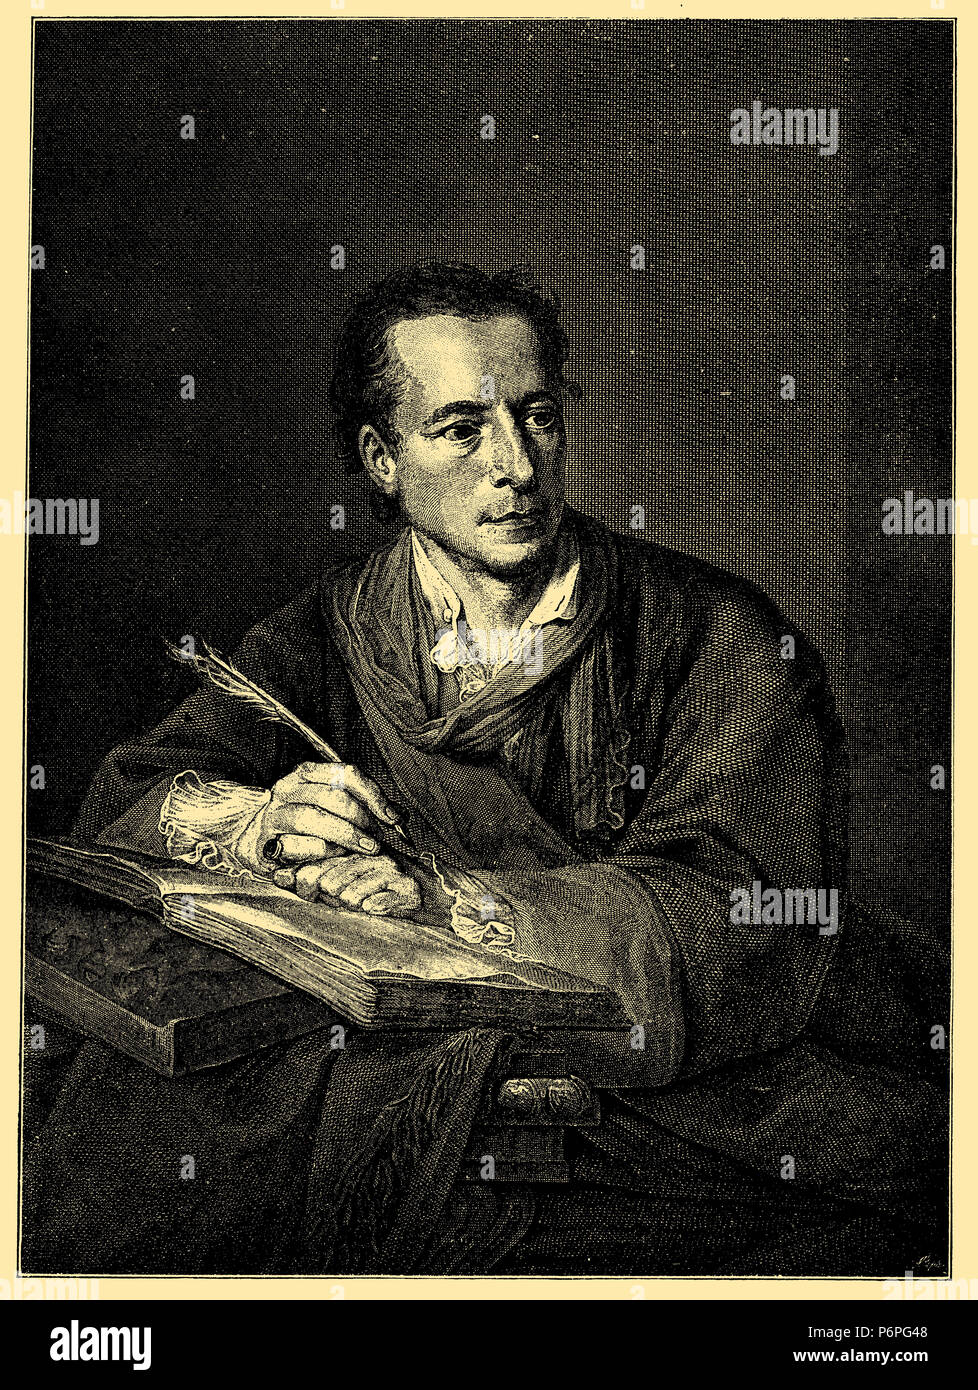 Johann Joachim Winckelmann (1717-1768), archéologue allemand, bibliothécaire, anciens et d'art du siècle des Lumières, dans la 47e année de sa vie. Après la peinture de Angelika Kauffmann, gravée par Rudolf Rahn, 1910 Banque D'Images